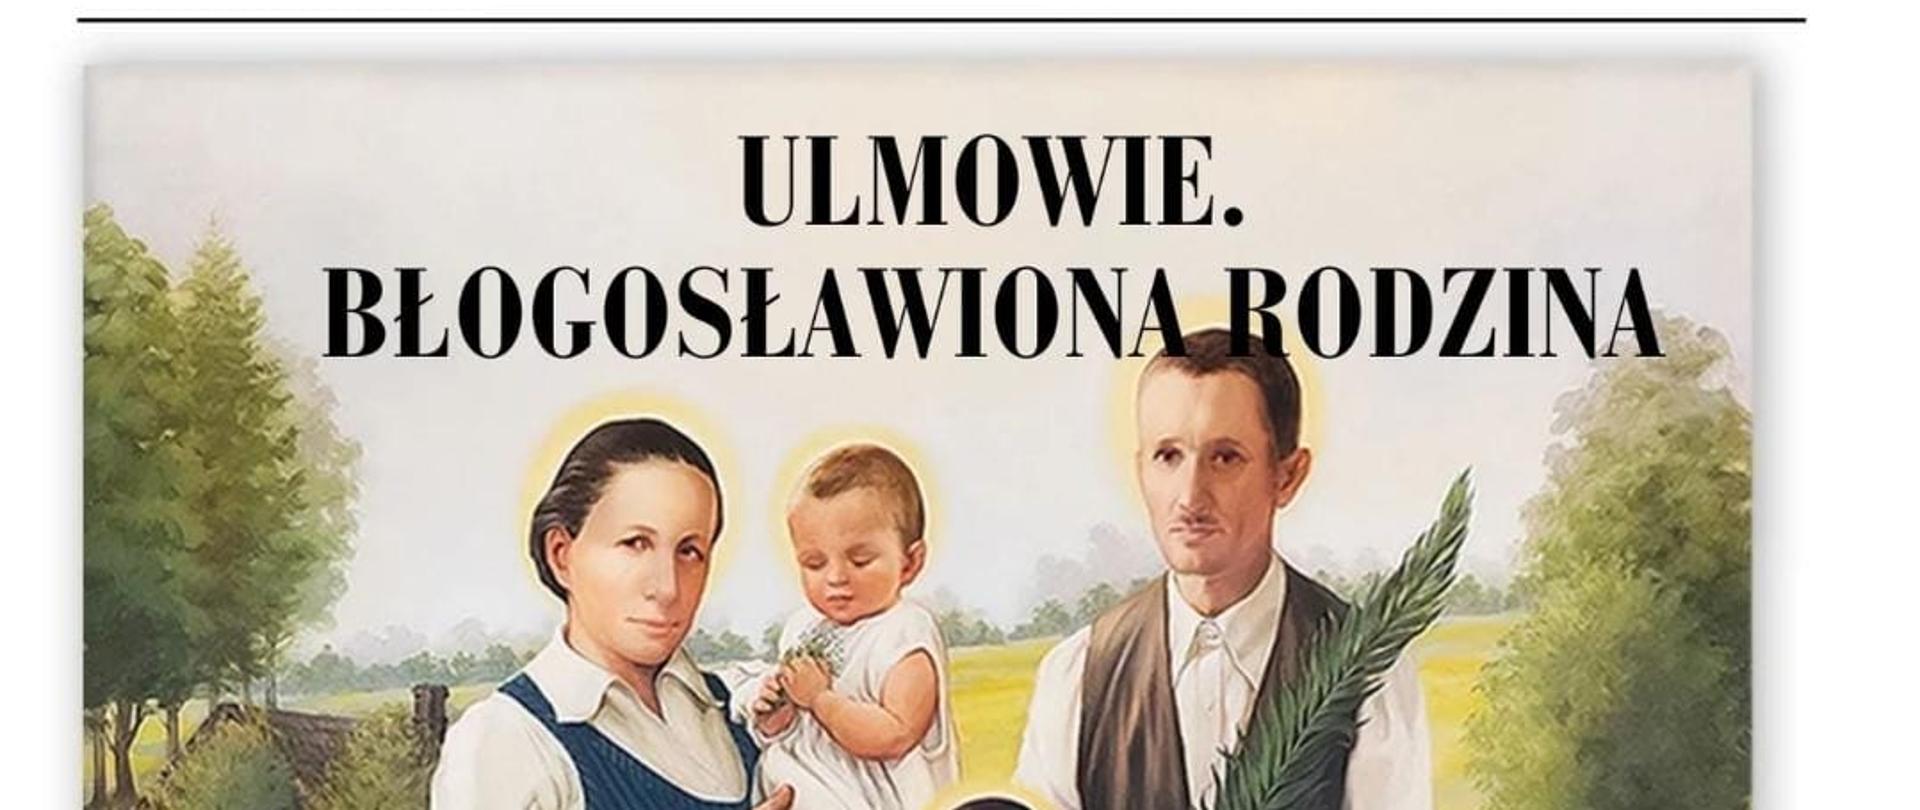 Na plakacie w centralnej części znajduję się rodzina. Kobieta w ciąży trzyma na rękach dziecko, obok niej stoi mężczyzna oraz pięcioro dzieci. 